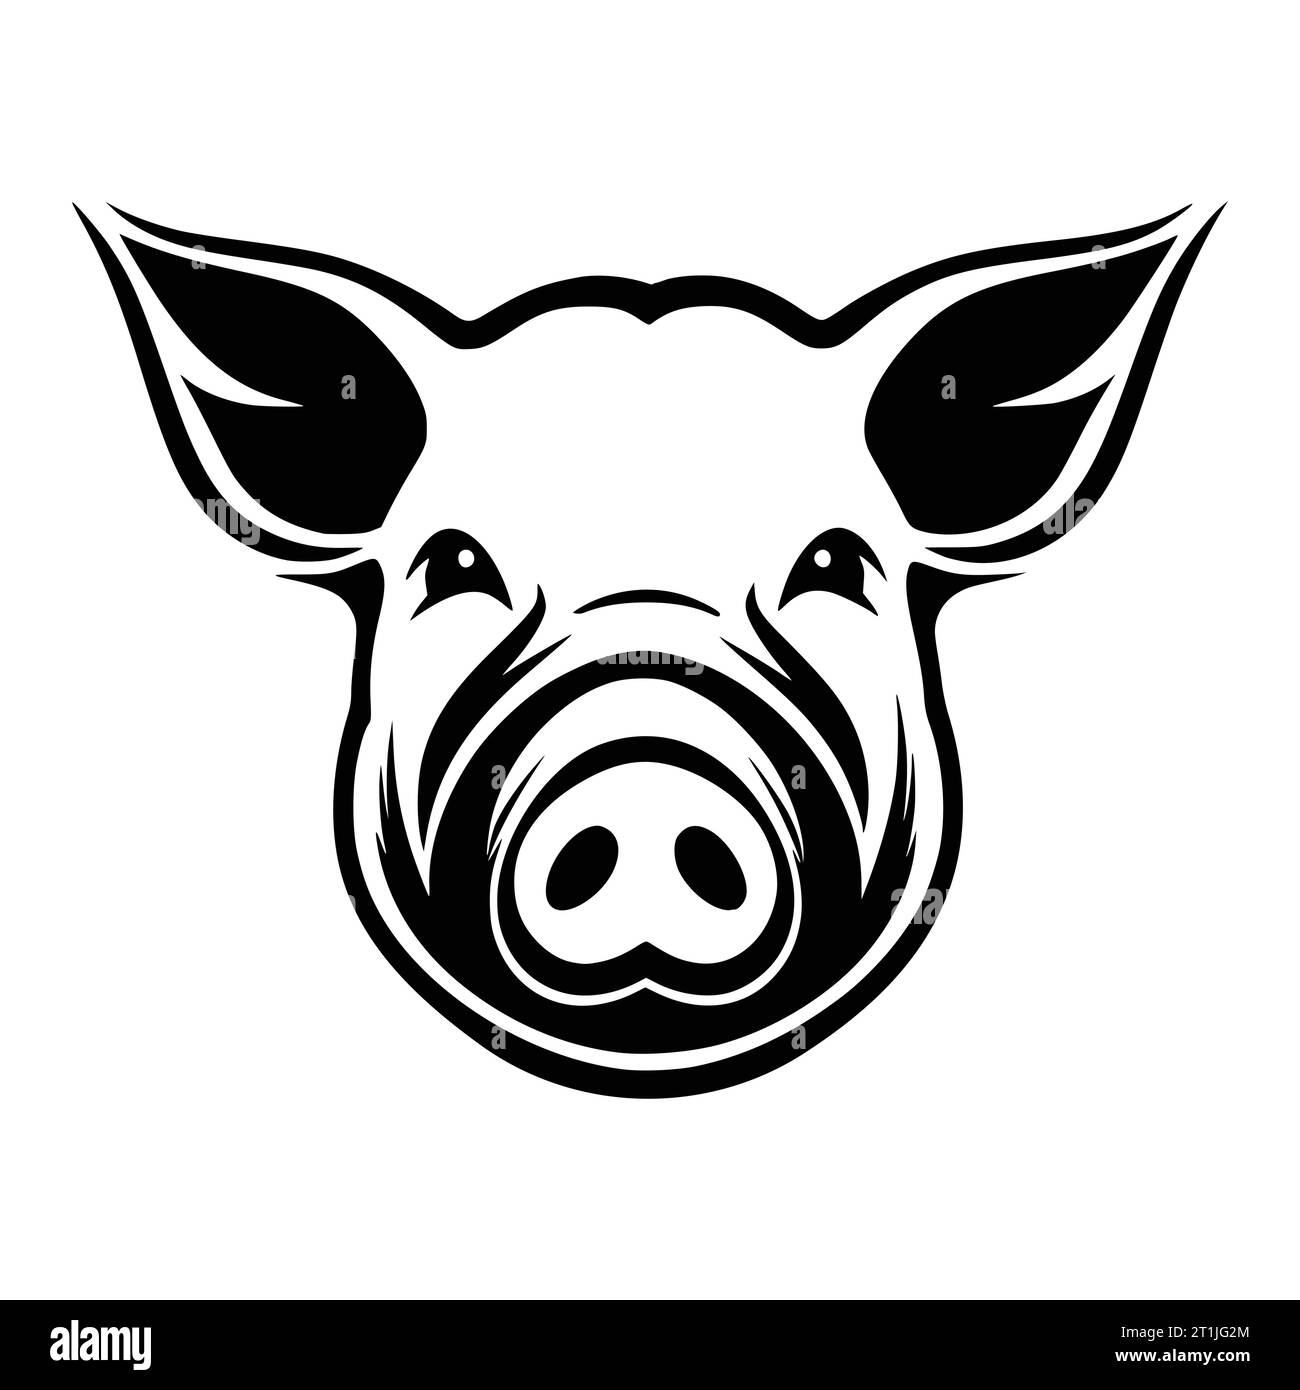 pig mammal wild animal head illustration for logo or symbol Stock Vector